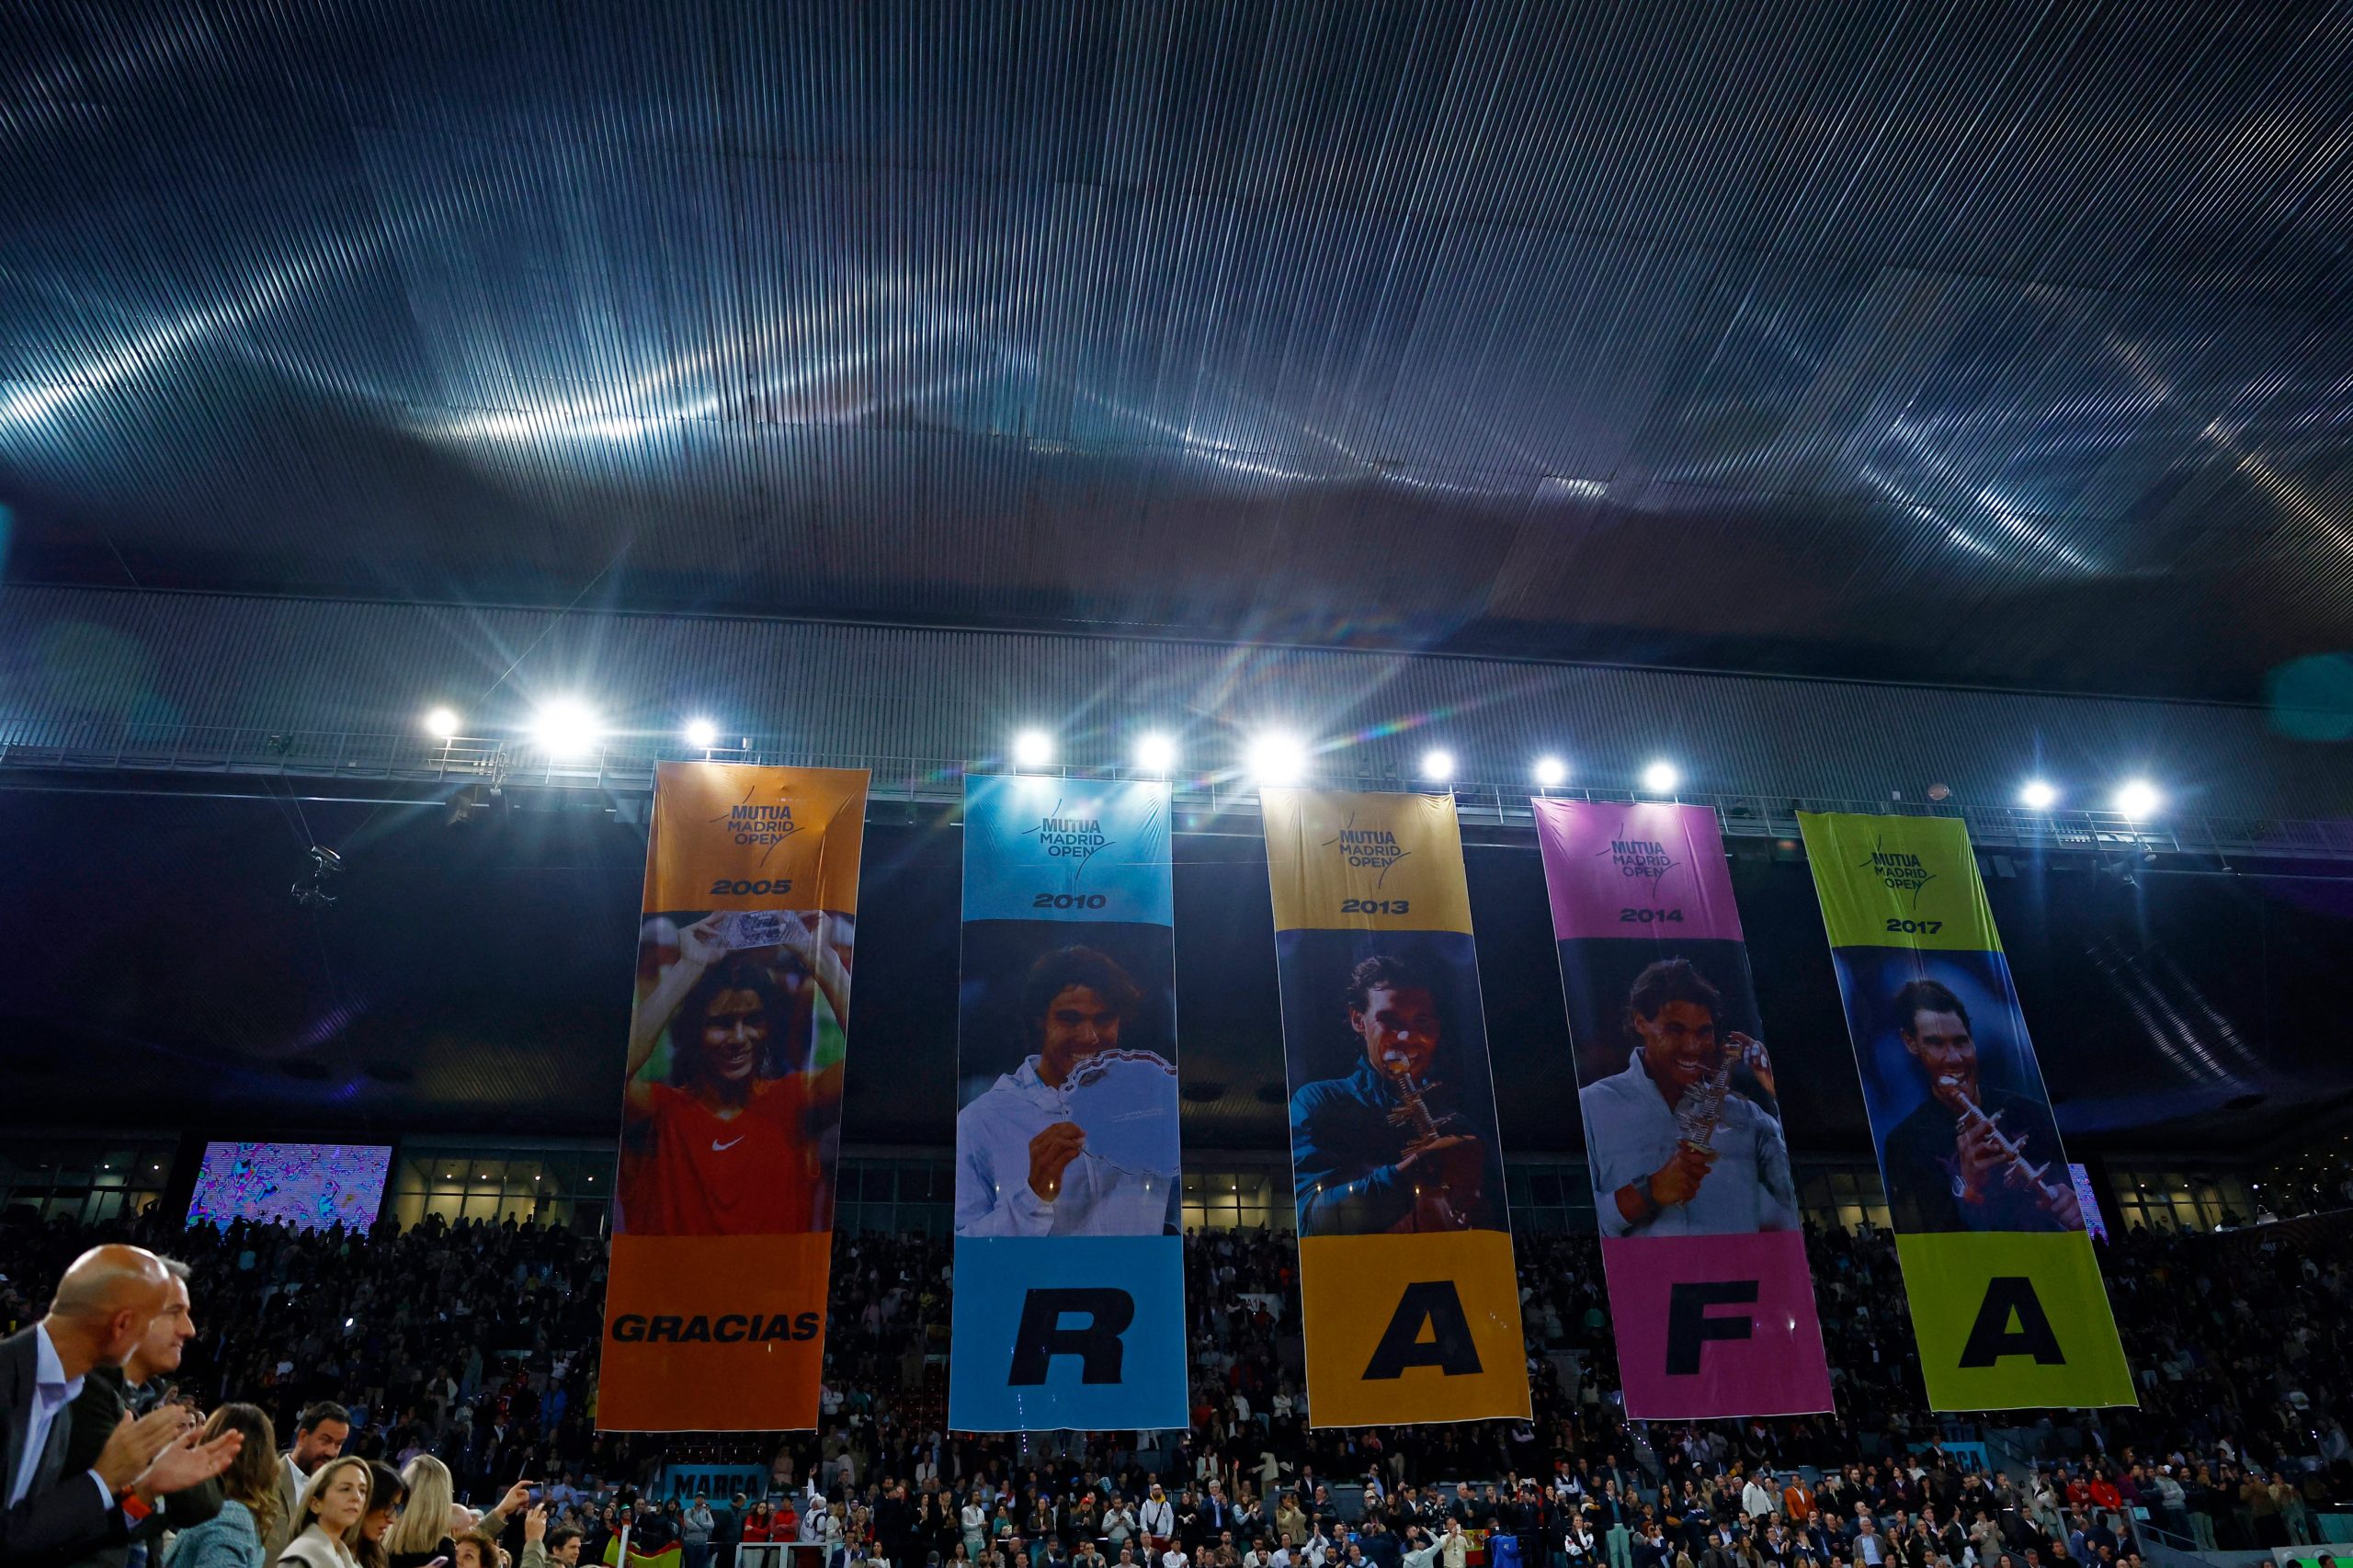 Después del partido, los organizadores del torneo desplegaron cinco pancartas marcando cada una de las cinco victorias de Nadal en Madrid en 2005, 2010, 2013, 2014 y 2017